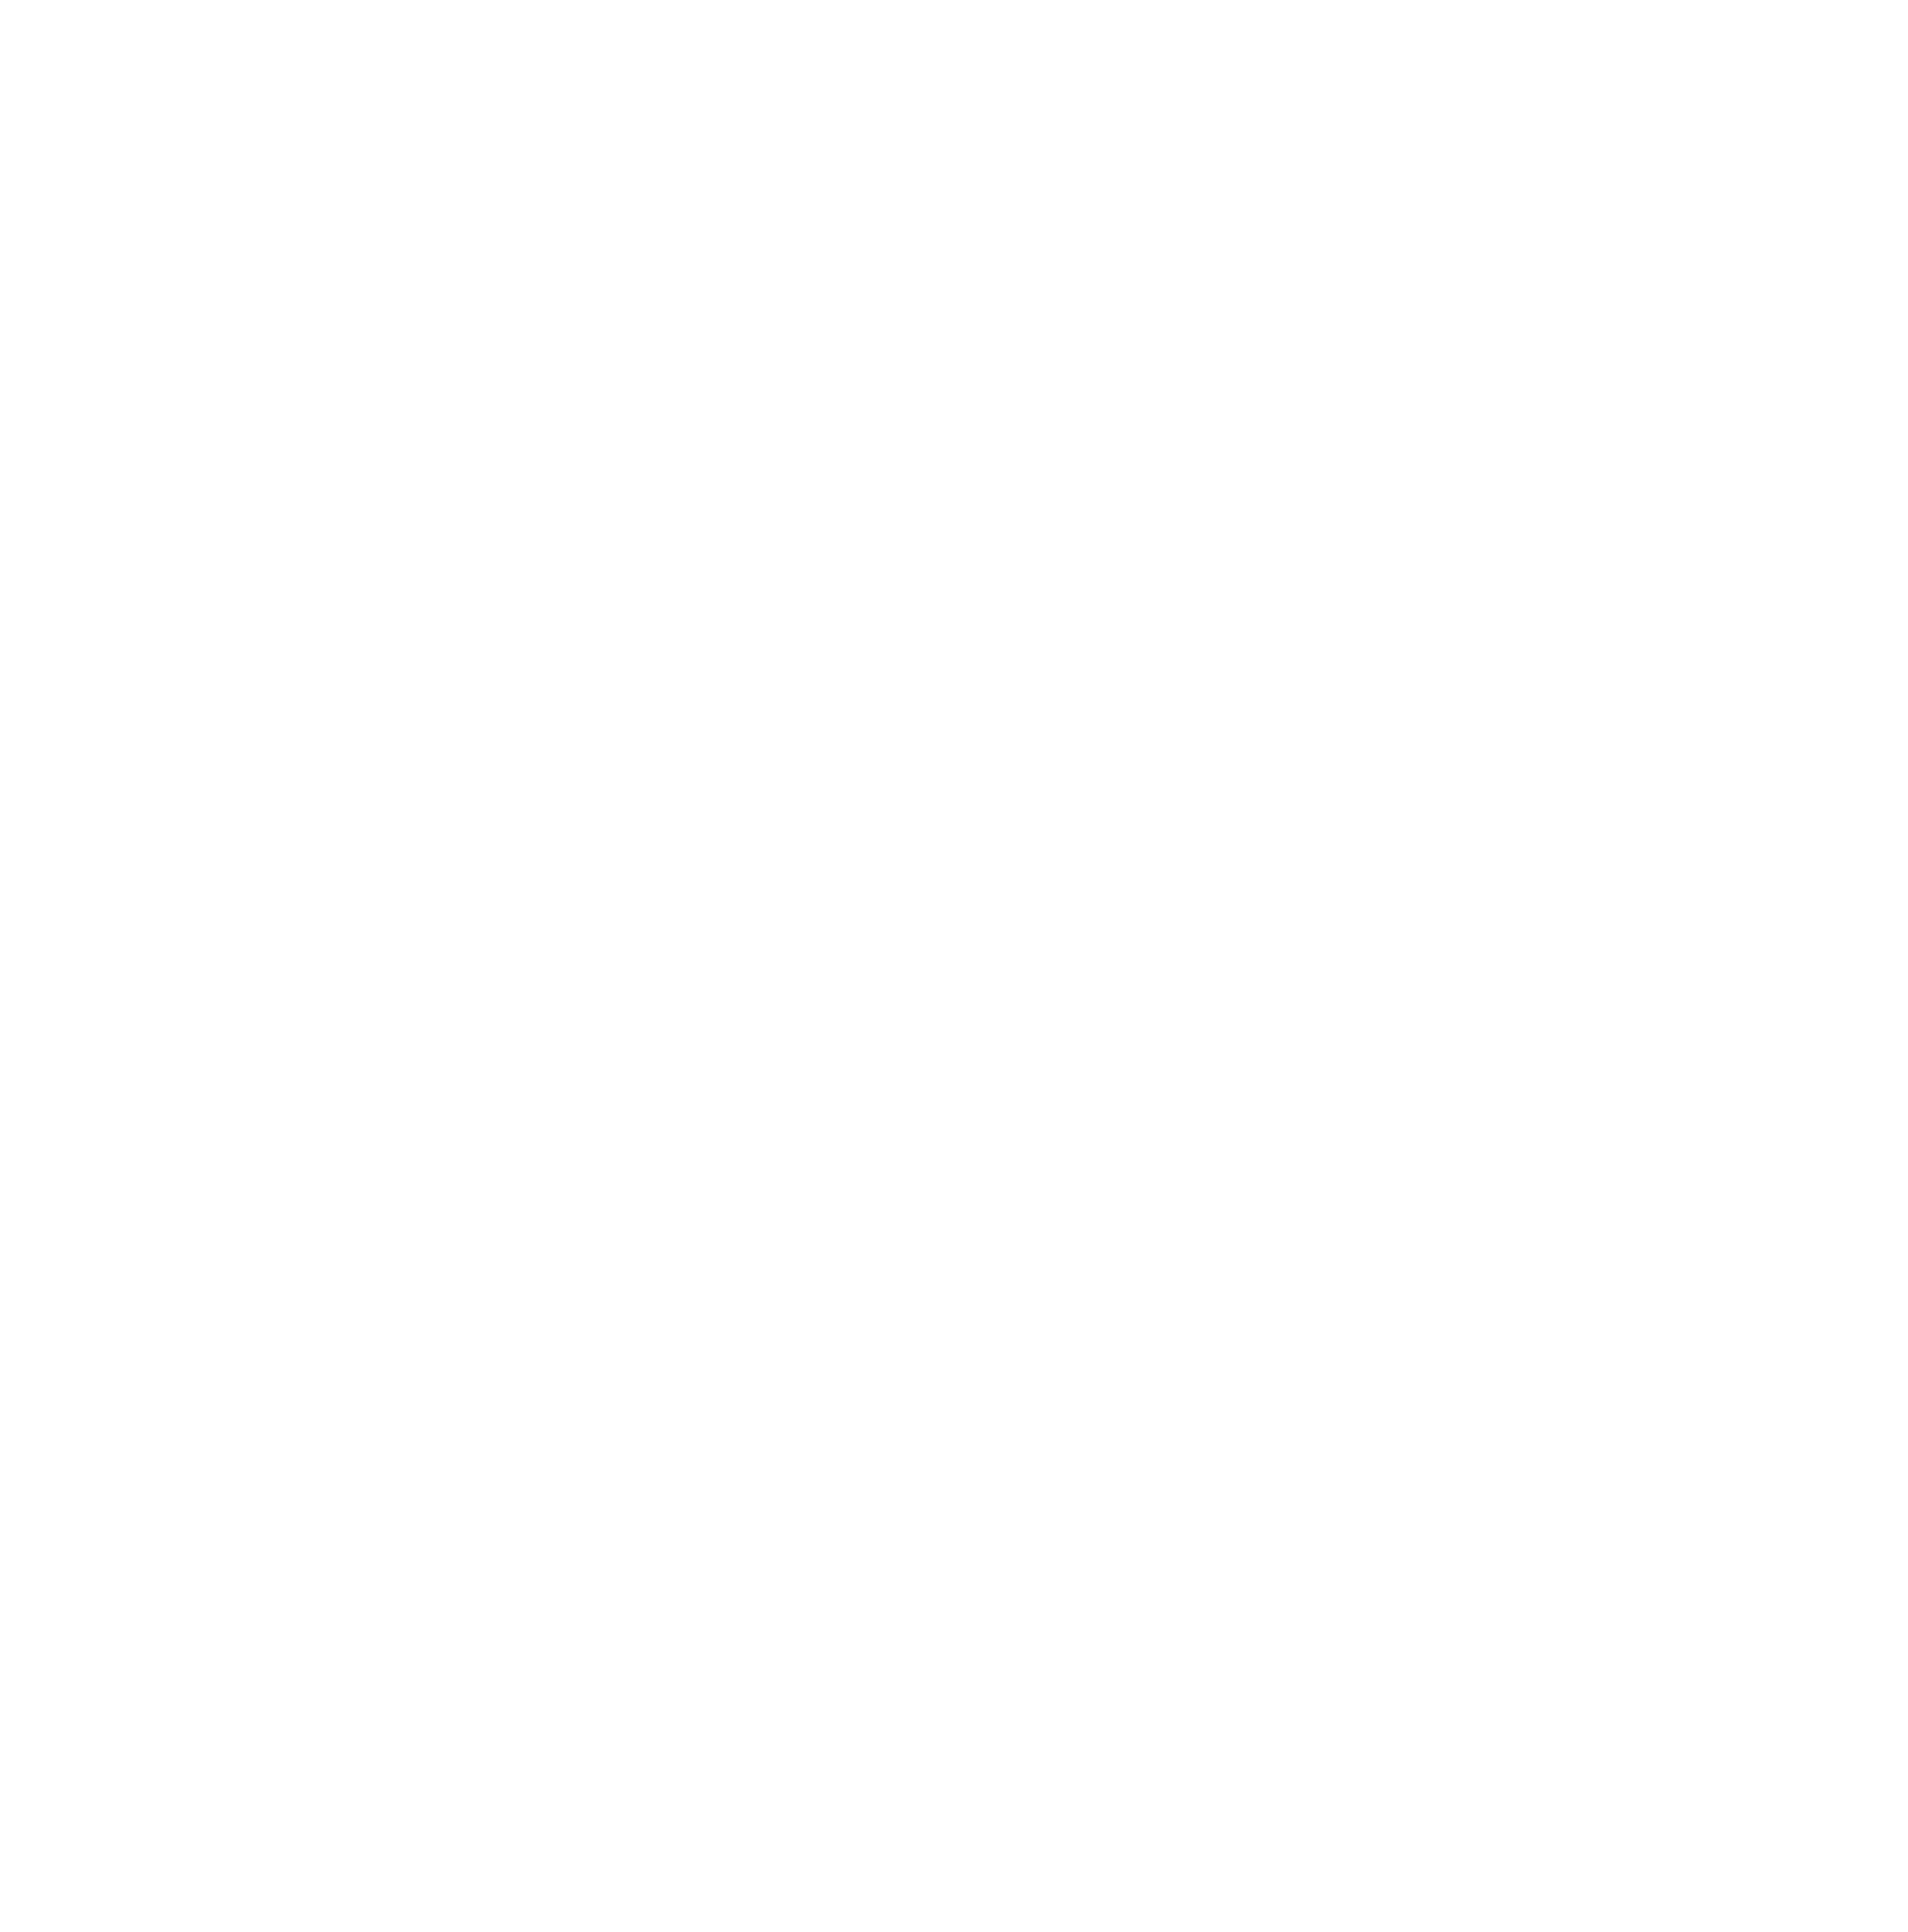 Zero6 Coffee Co